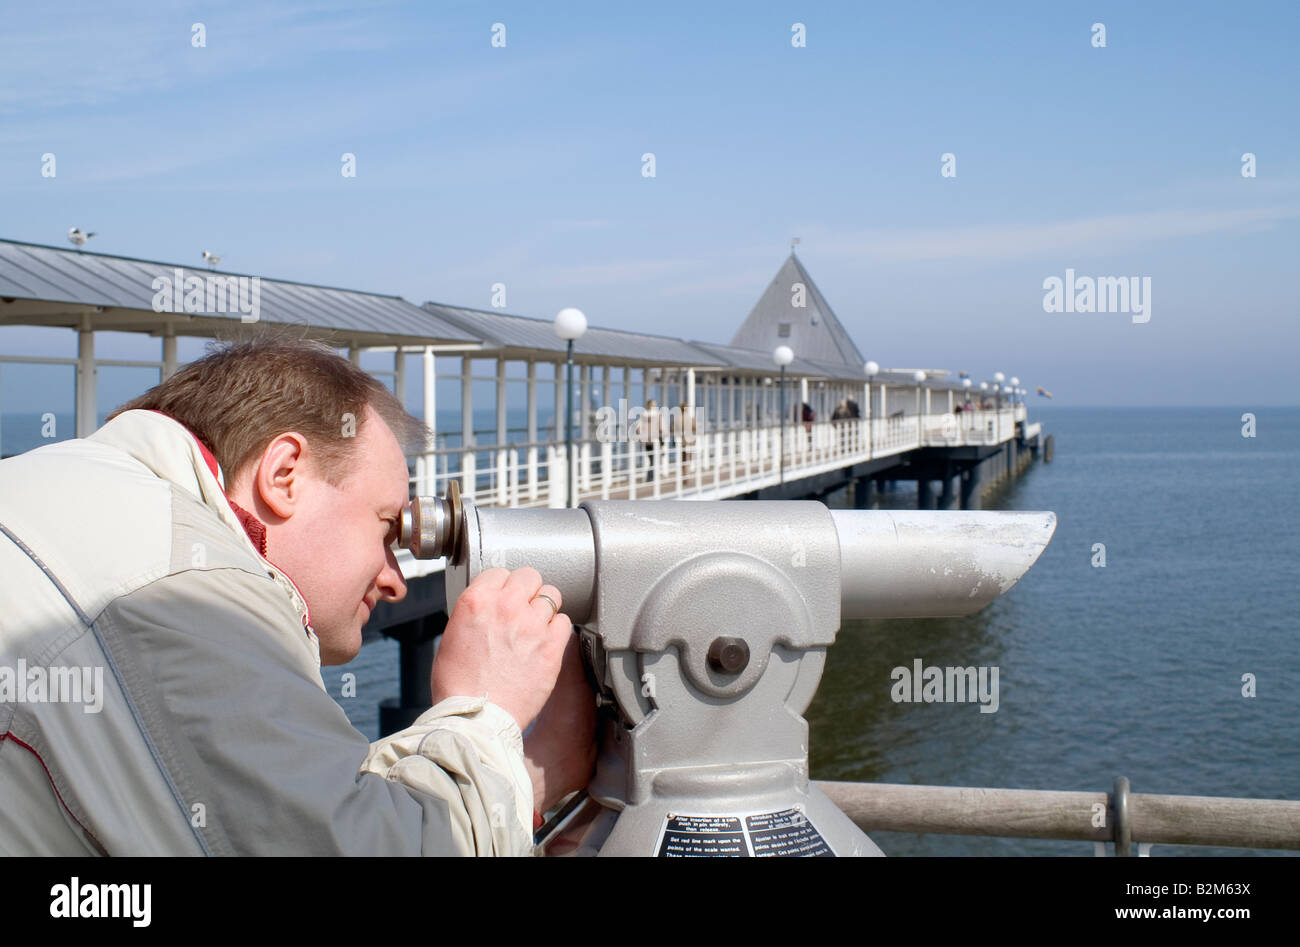 Man looking through binoculars / Pier Heringsdorf, Usedom, Germany Stock Photo